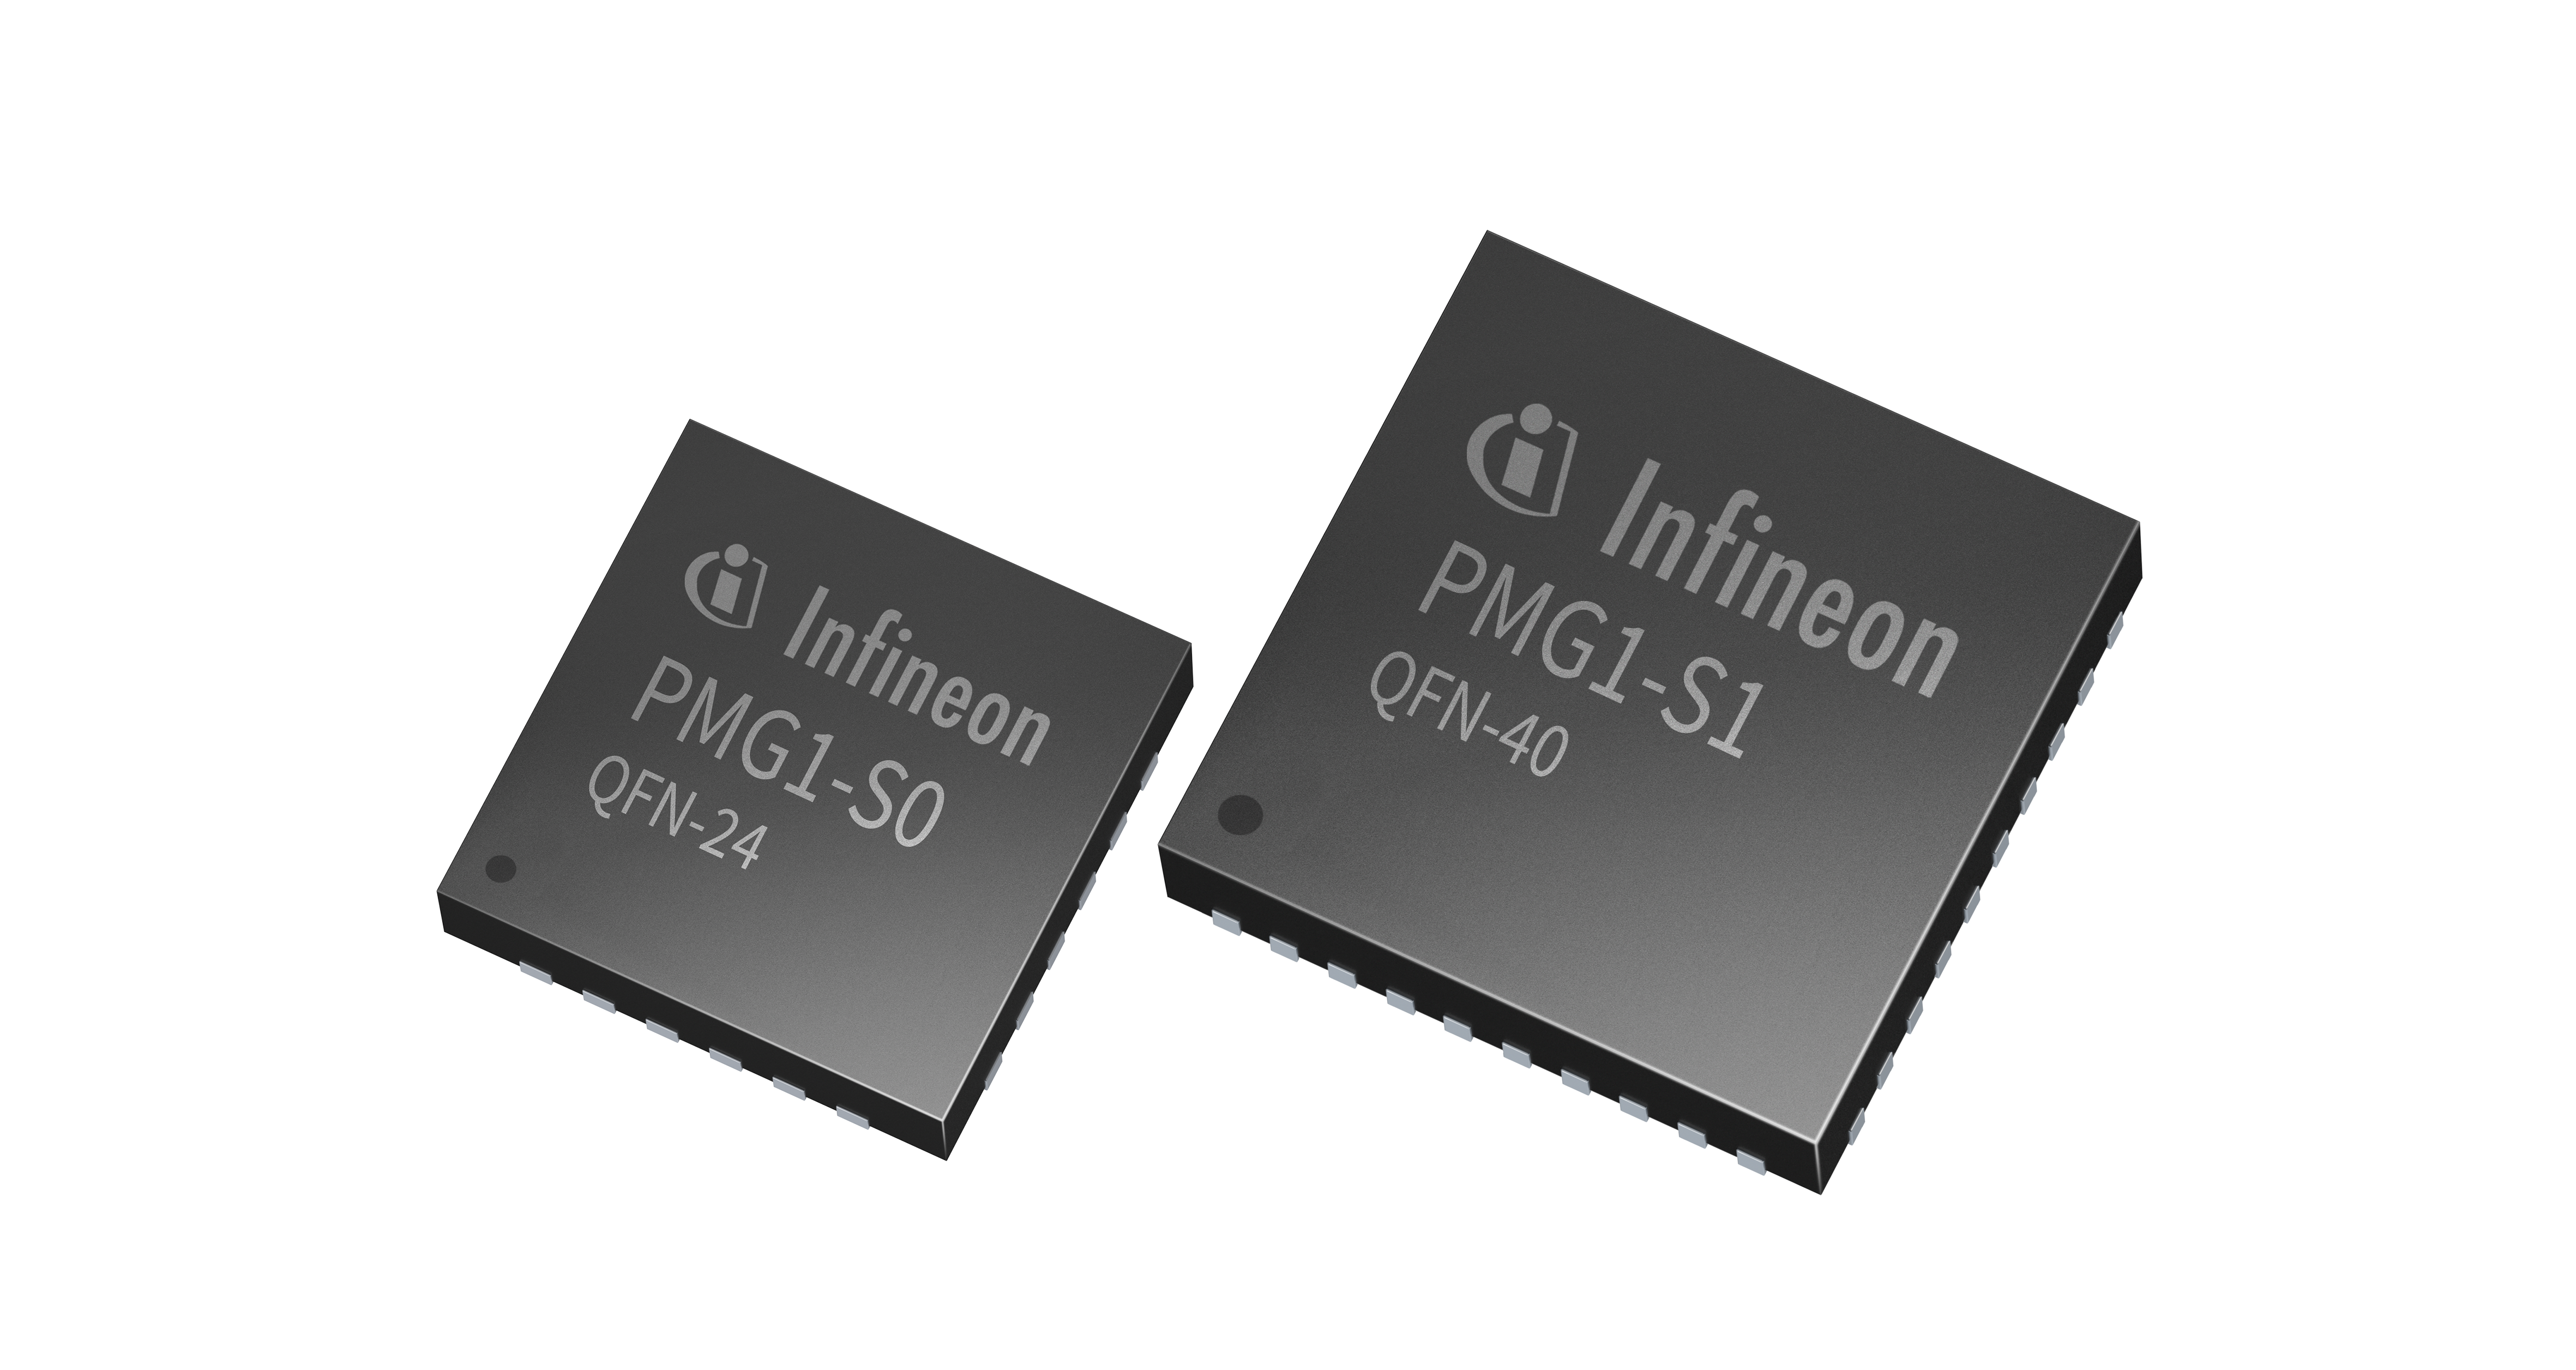 インフィニオンがより高いワット数をサポートする業界初のUSB PD 3.1高電圧マイクロコントローラ発表